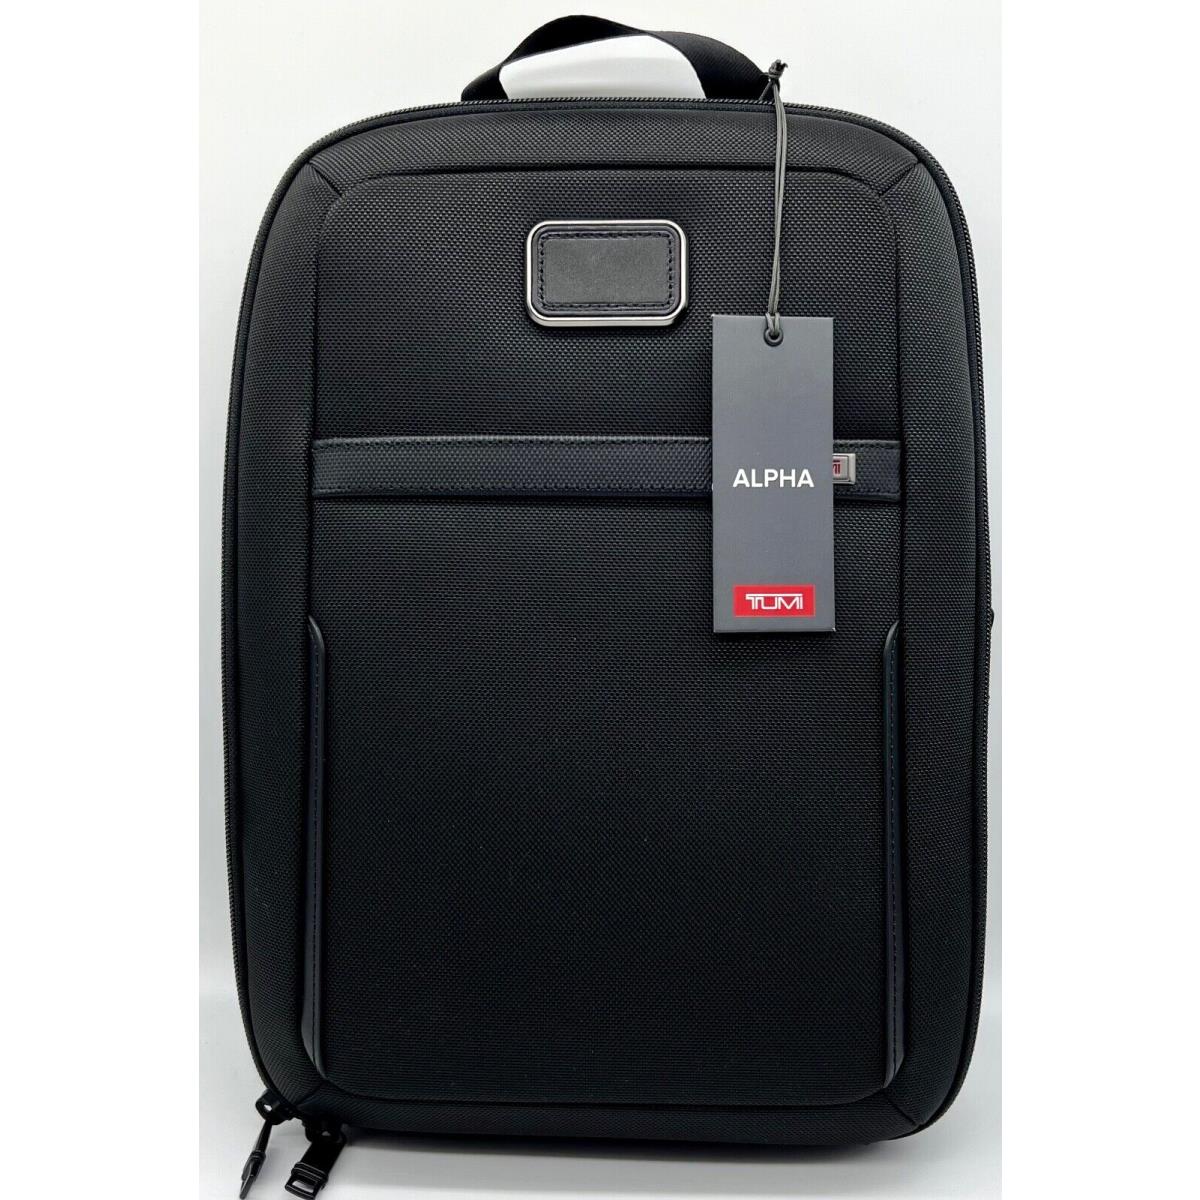 Tumi Alpha 3 Black Shoe Bag Shoulder Bag Expandable Versatile